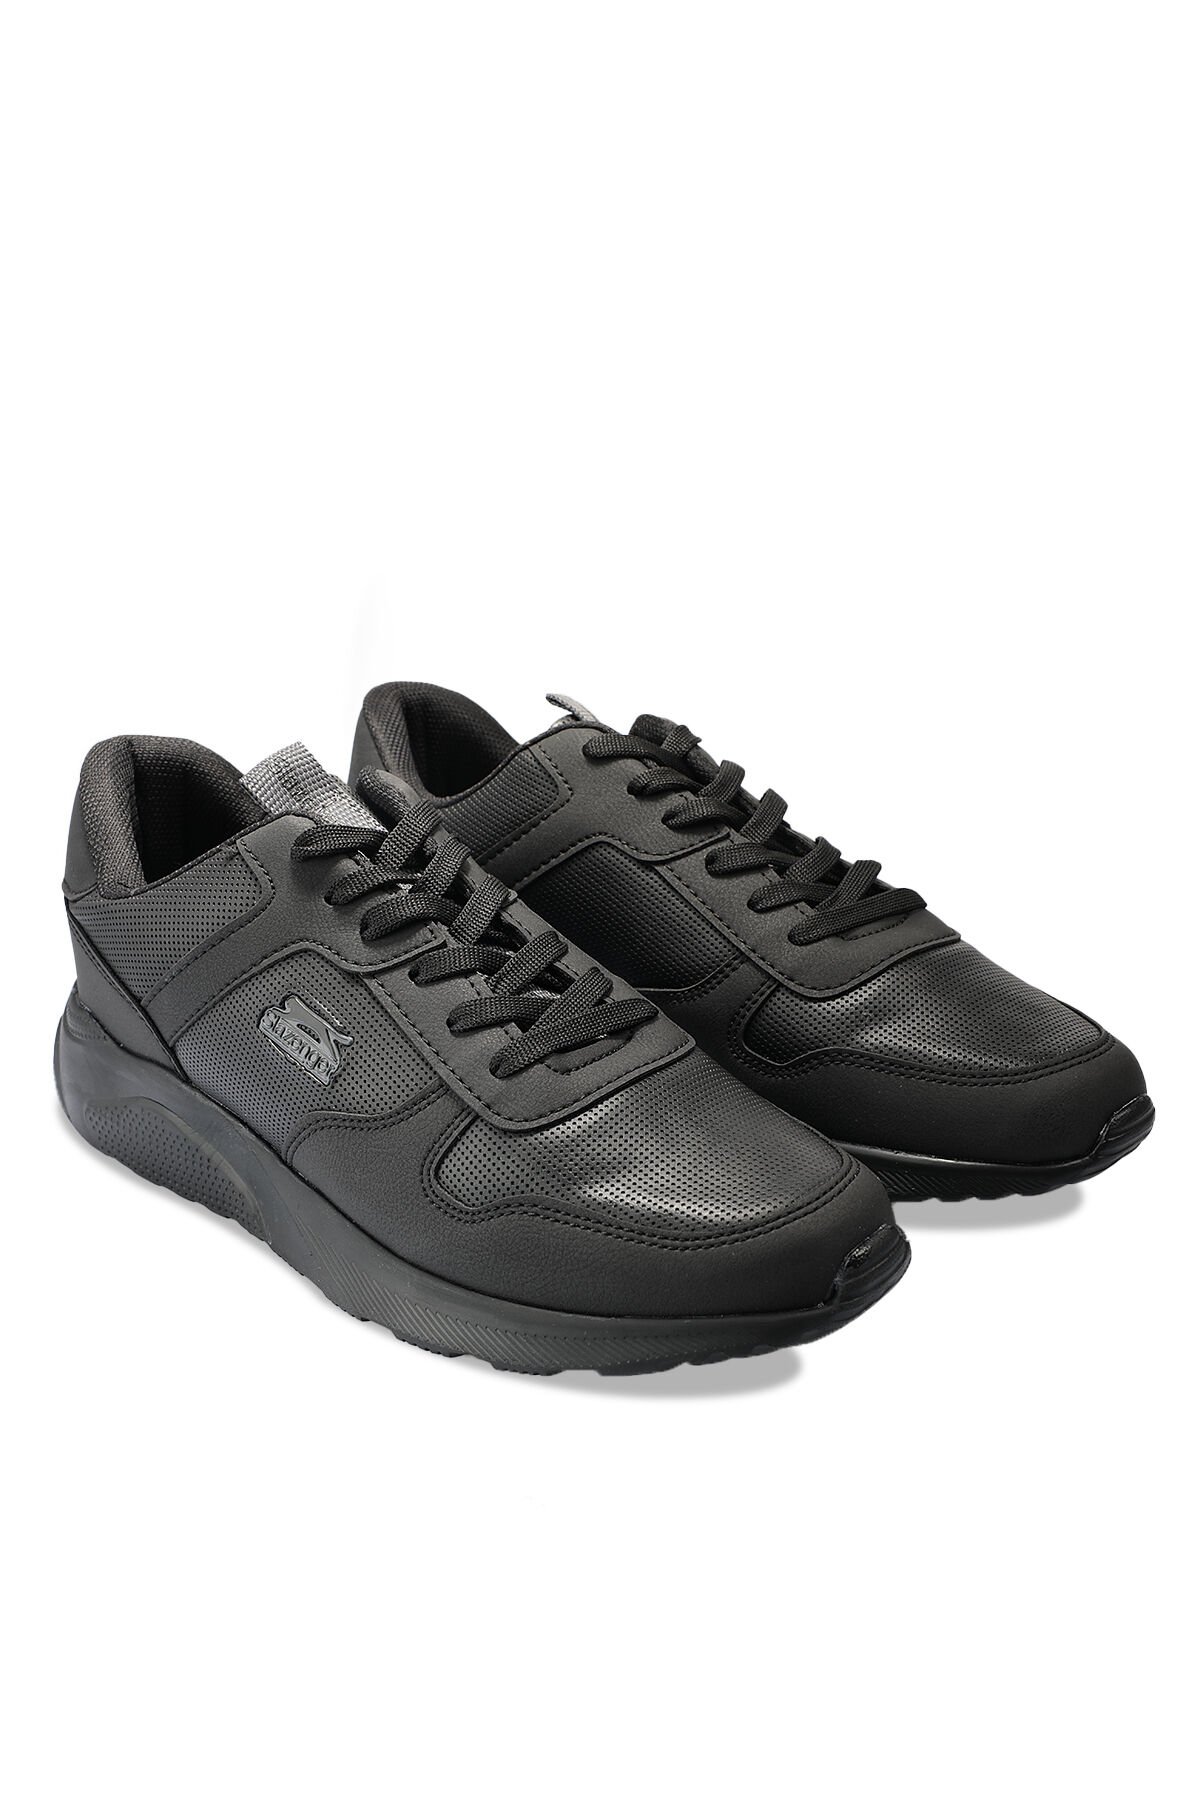 Slazenger ENRICA Sneaker Kadın Ayakkabı Siyah / Siyah - Thumbnail